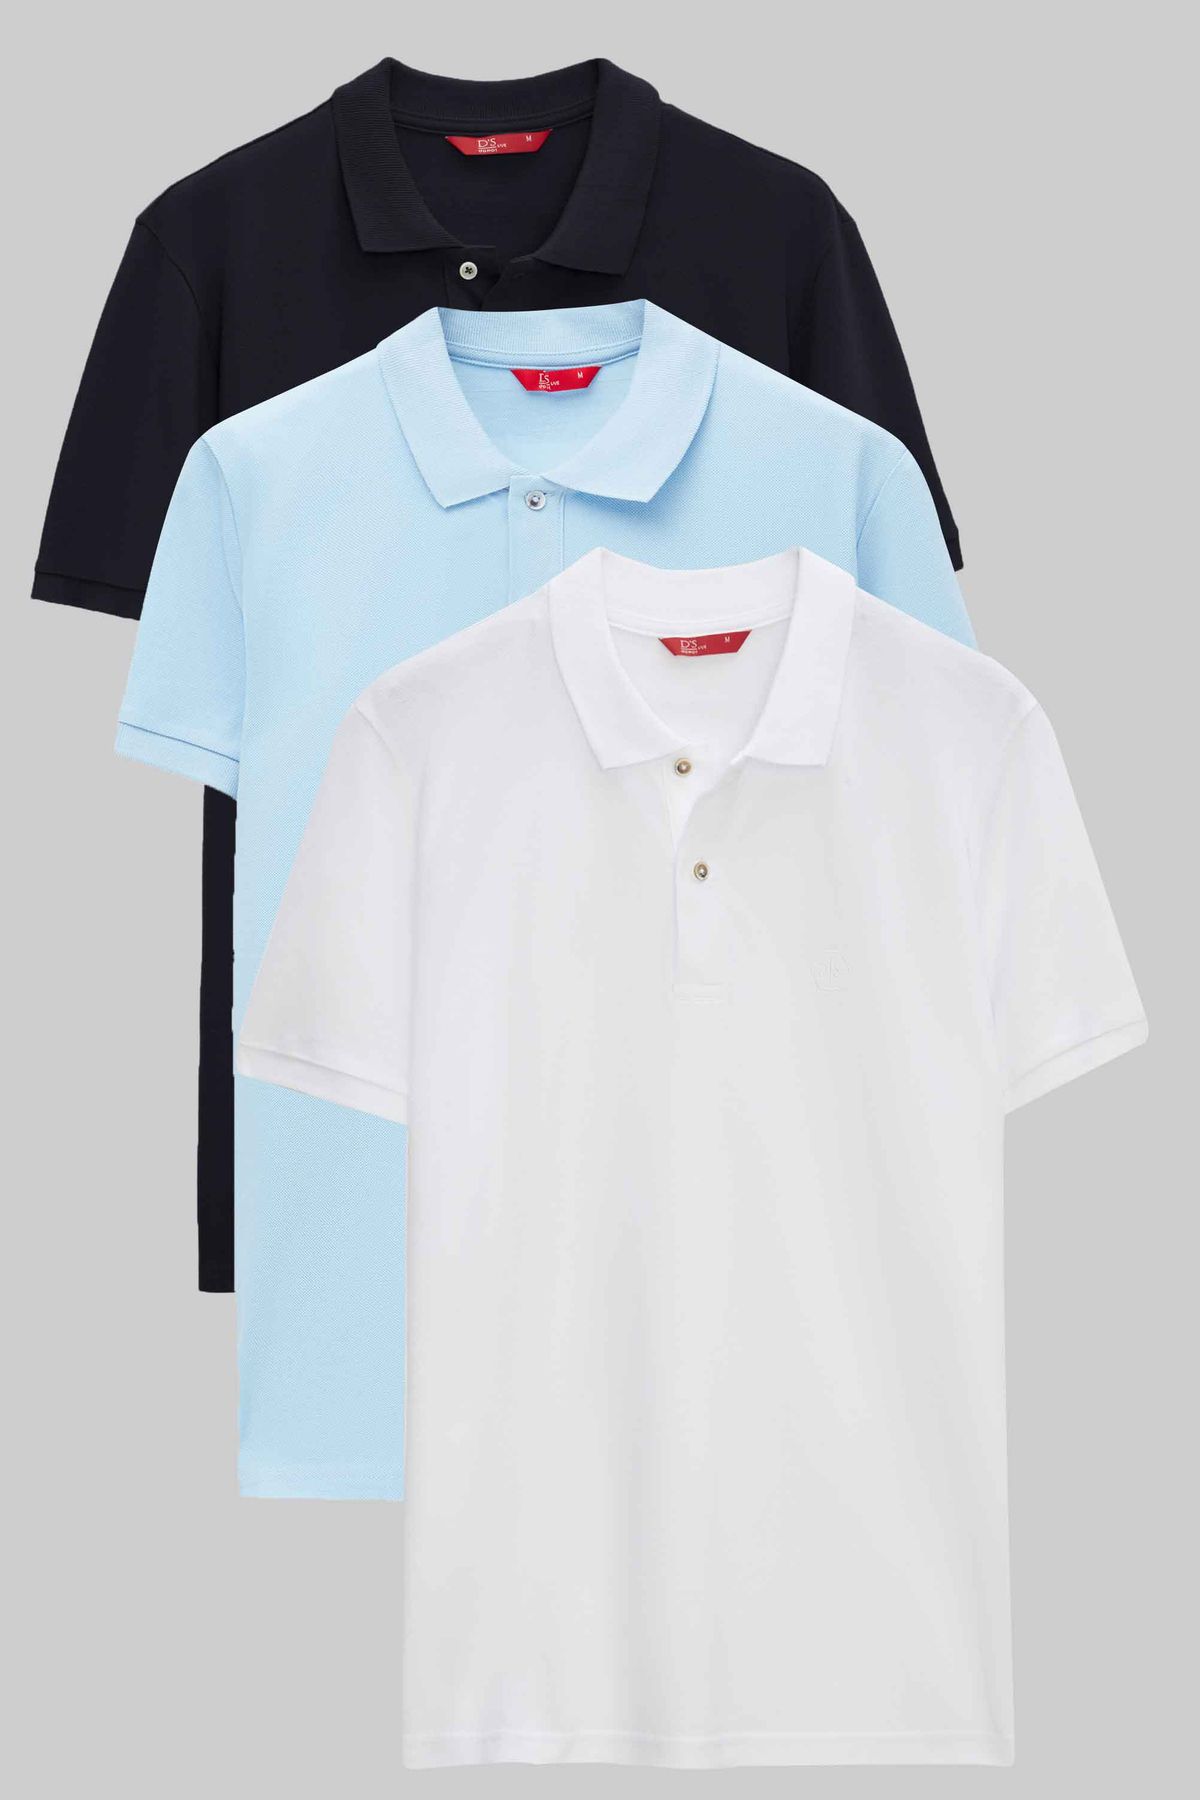 D'S Damat Ds Damat Regular Fit Lacivert/Açık Mavi/Beyaz Pike Dokulu %100 Pamuk Polo Yaka T-Shirt